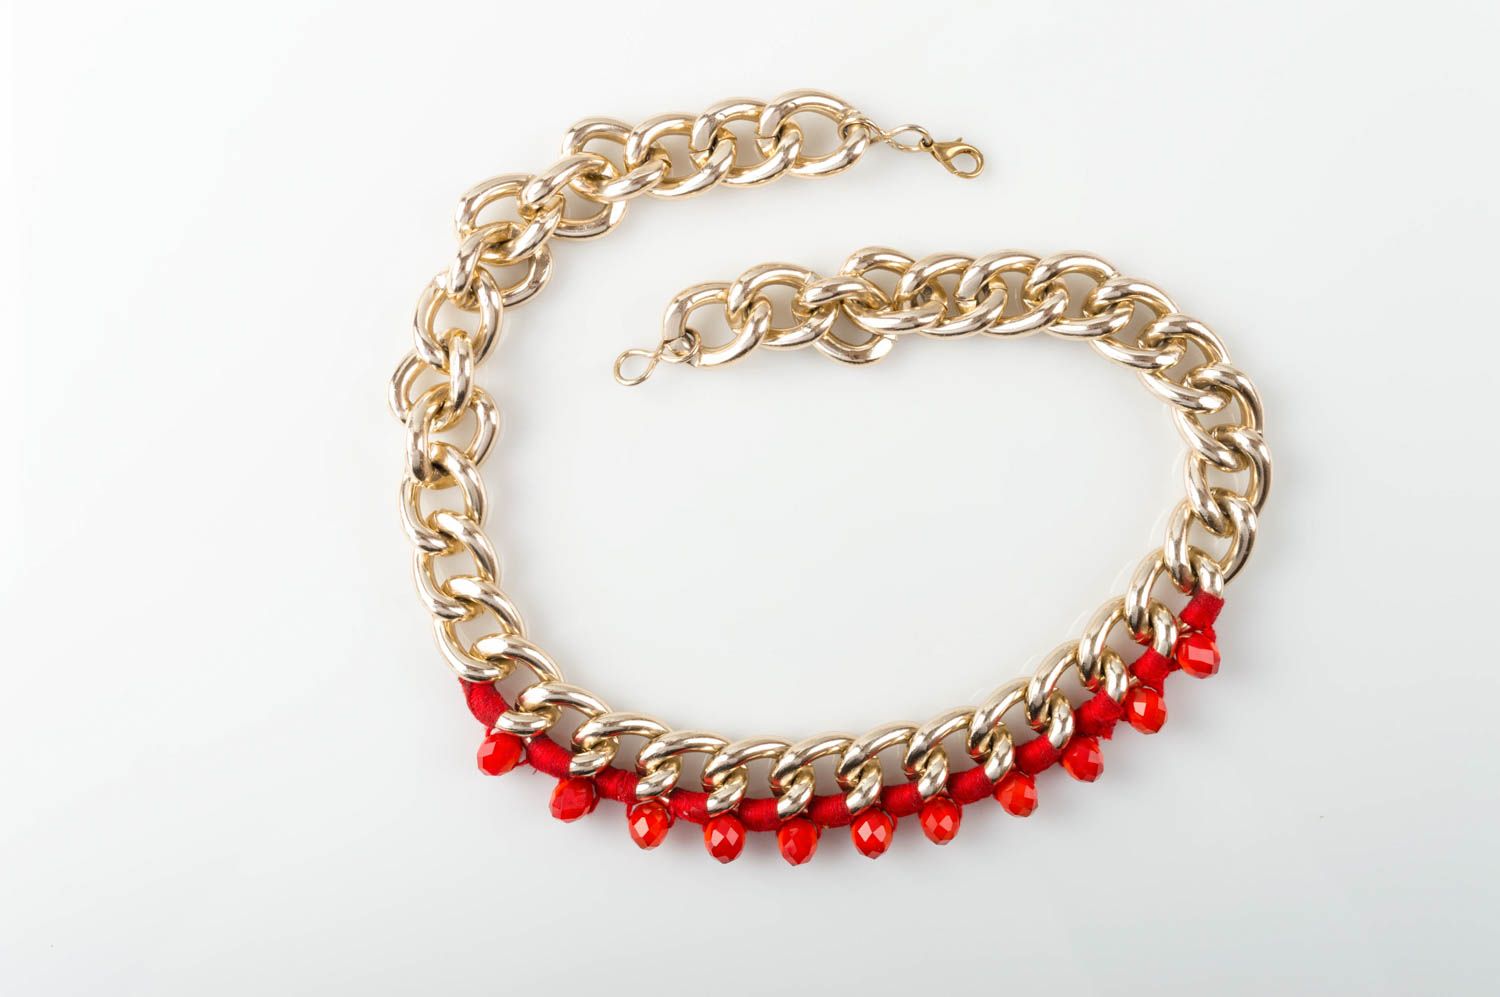 Красное ожерелье с кристаллами нарядное для девушки оригинальное ручной работы фото 2